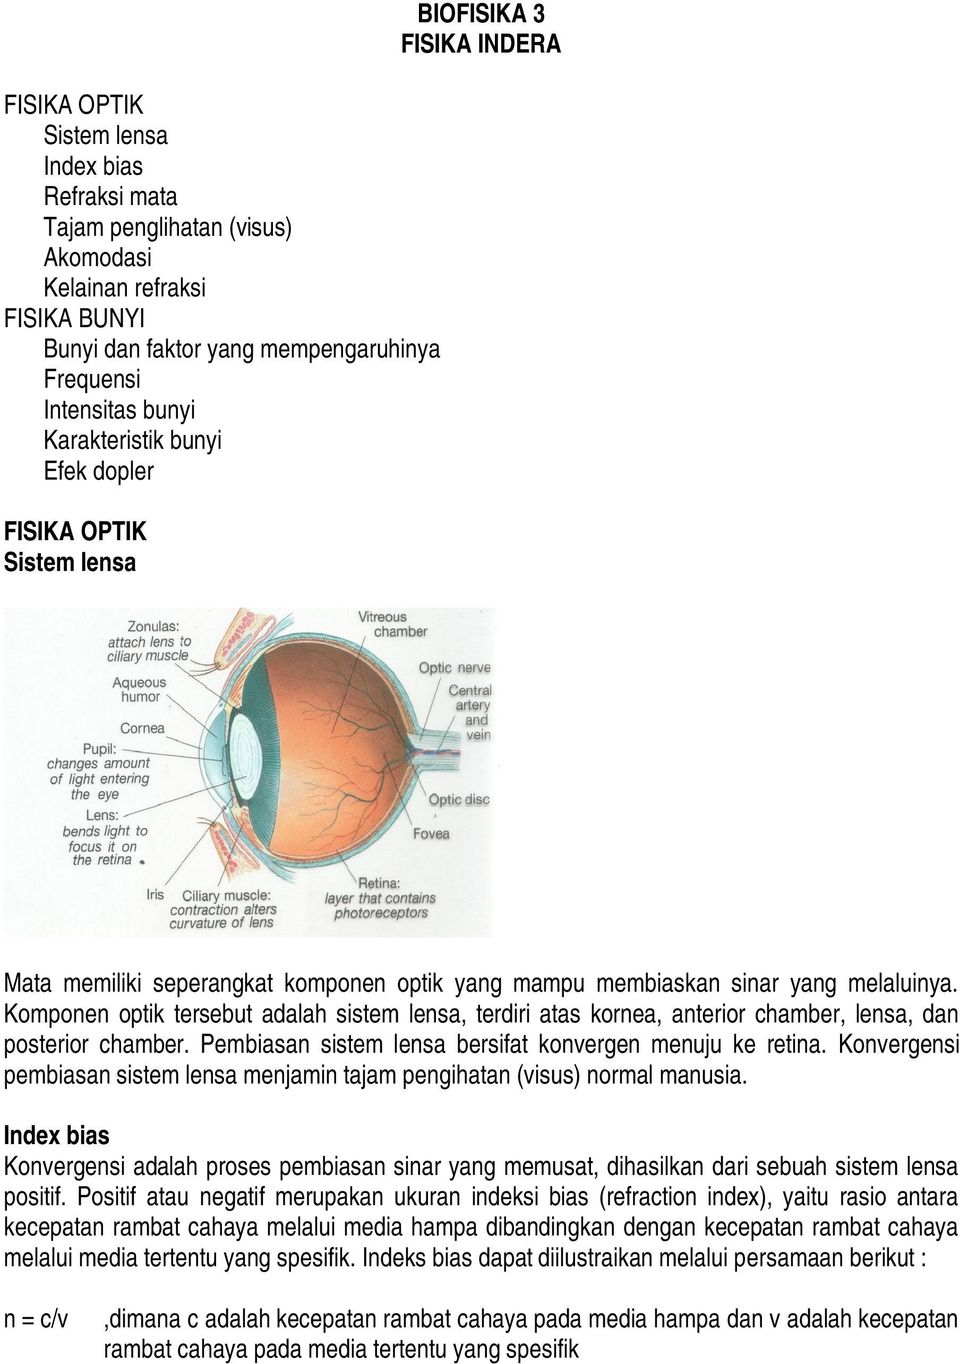 Komponen optik tersebut adalah sistem lensa, terdiri atas kornea, anterior chamber, lensa, dan posterior chamber. Pembiasan sistem lensa bersifat konvergen menuju ke retina.